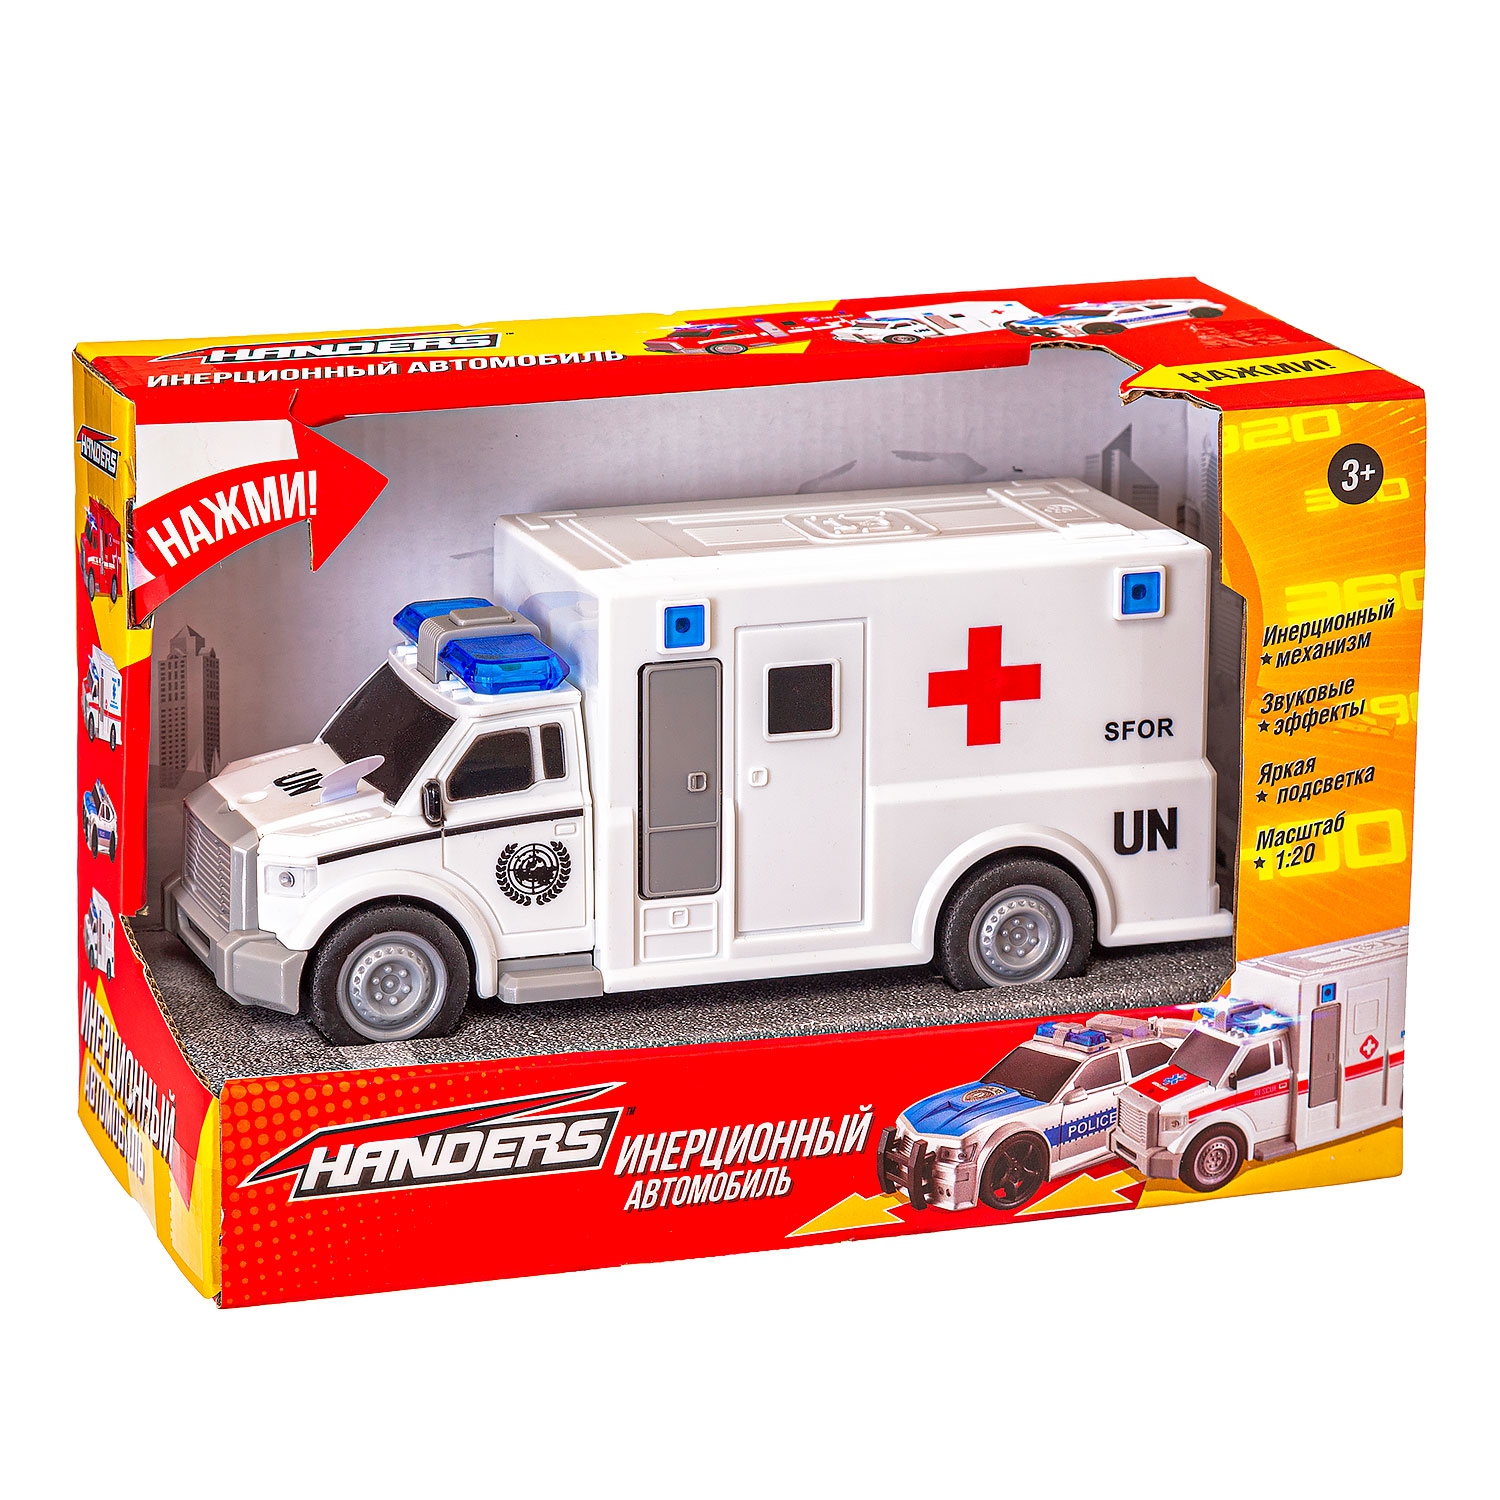 Инерционная игрушка Handers Фургон скорой помощи (19 см, 1:20, свет, звук)